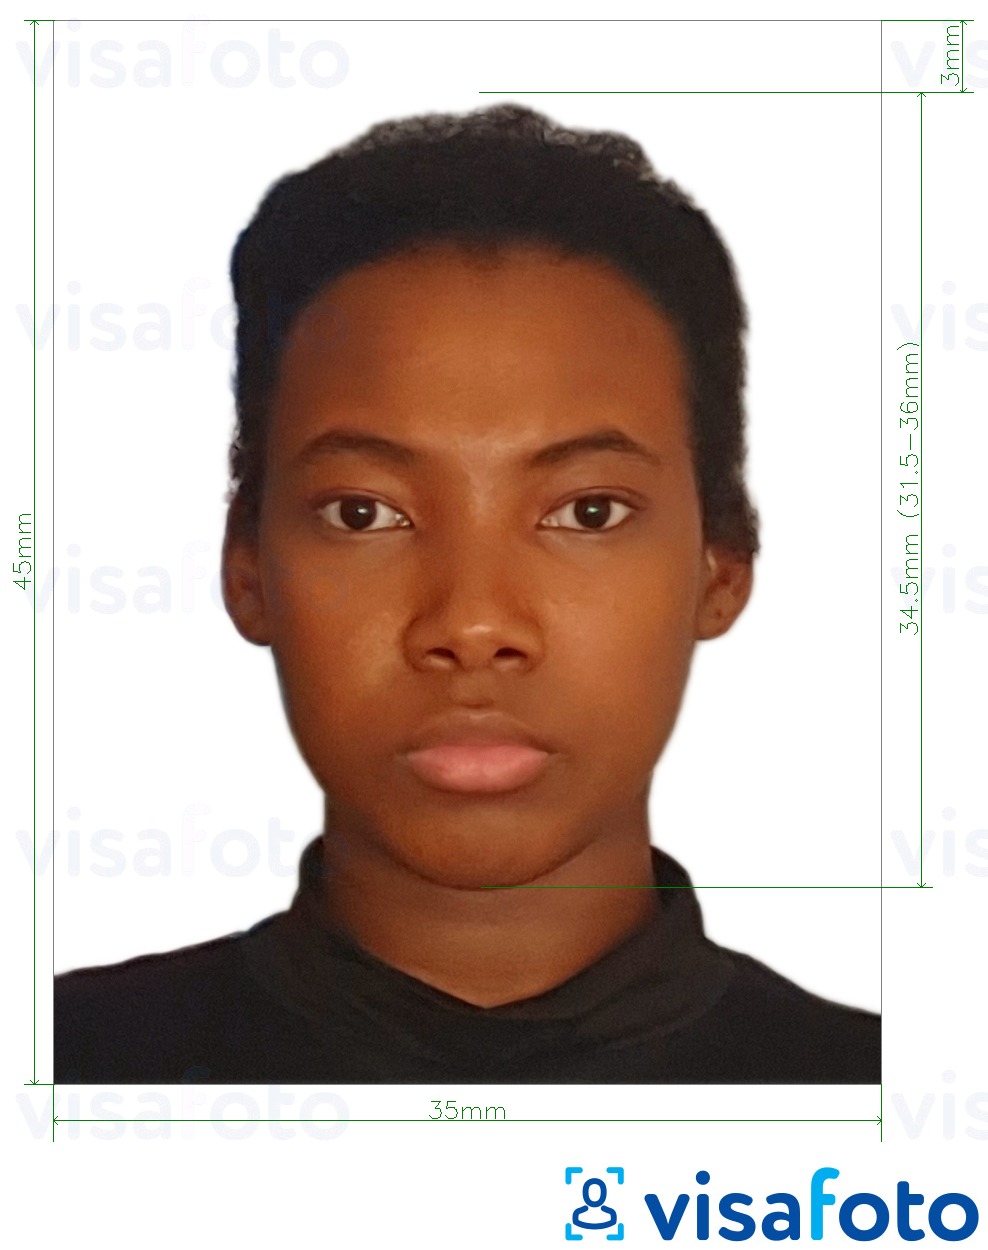 Nuotraukos pavyzdys Nigerijos viza 3.5x4.5 cm (35x45 mm) su tikslaus dydžio specifikacija